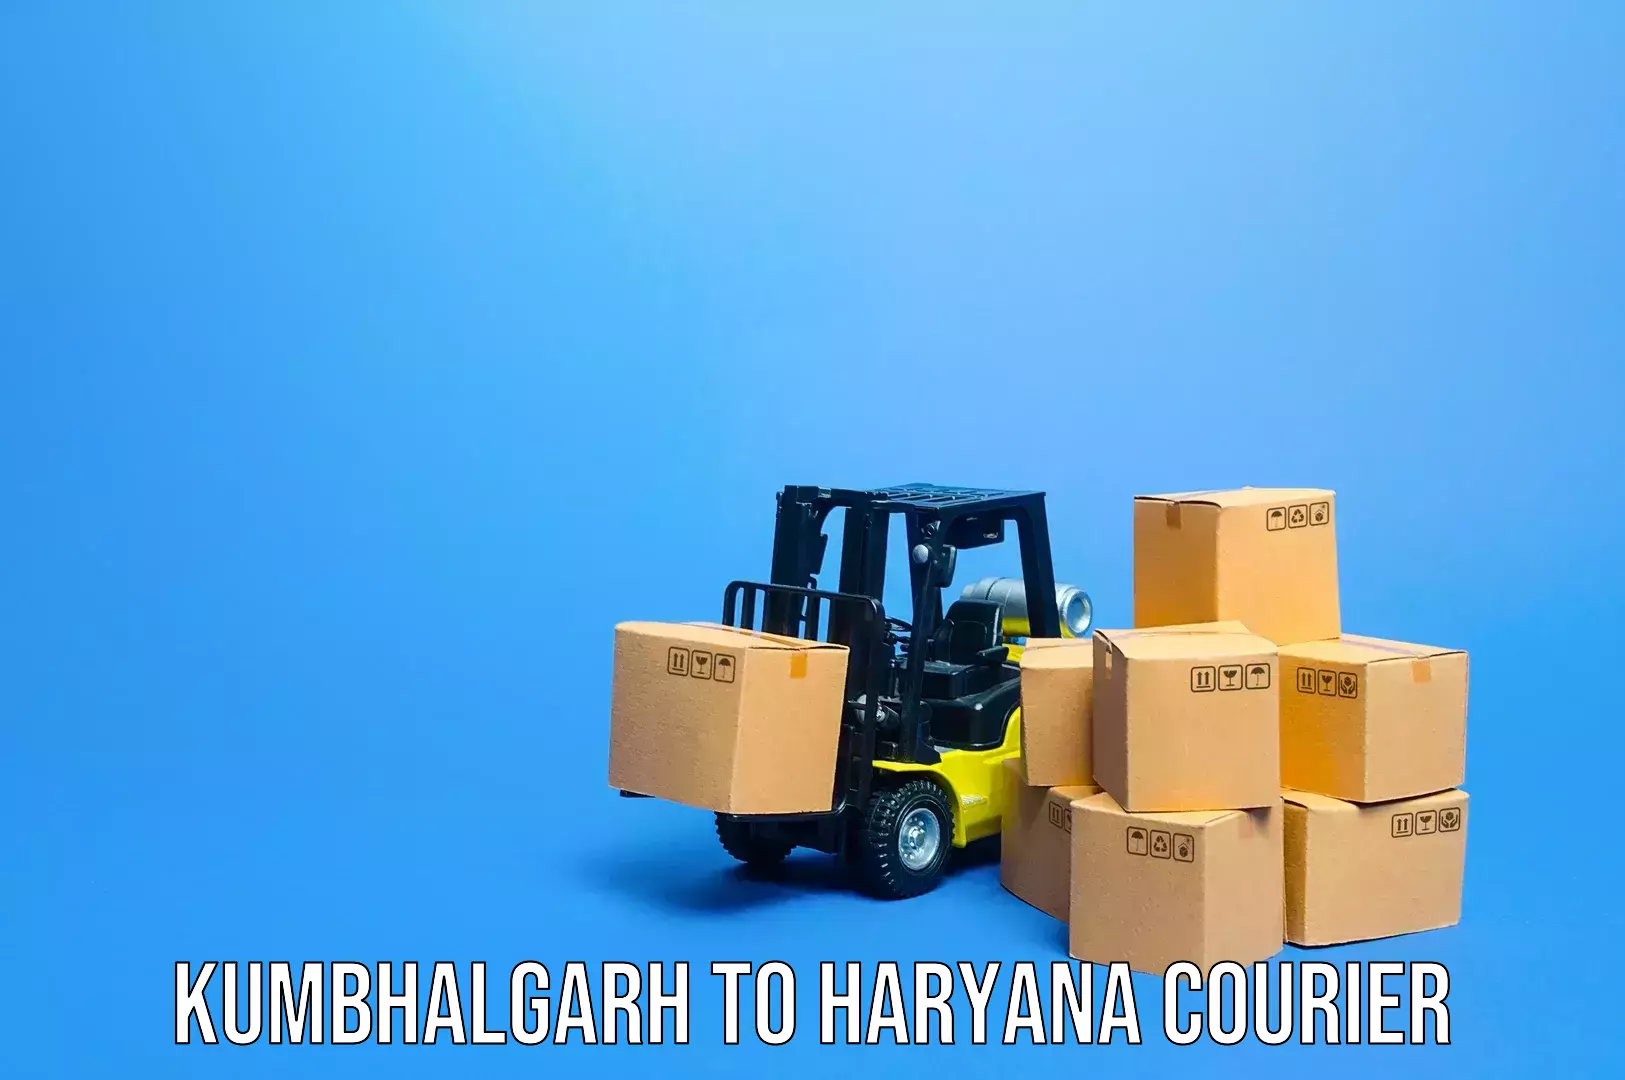 Baggage transport technology in Kumbhalgarh to Haryana